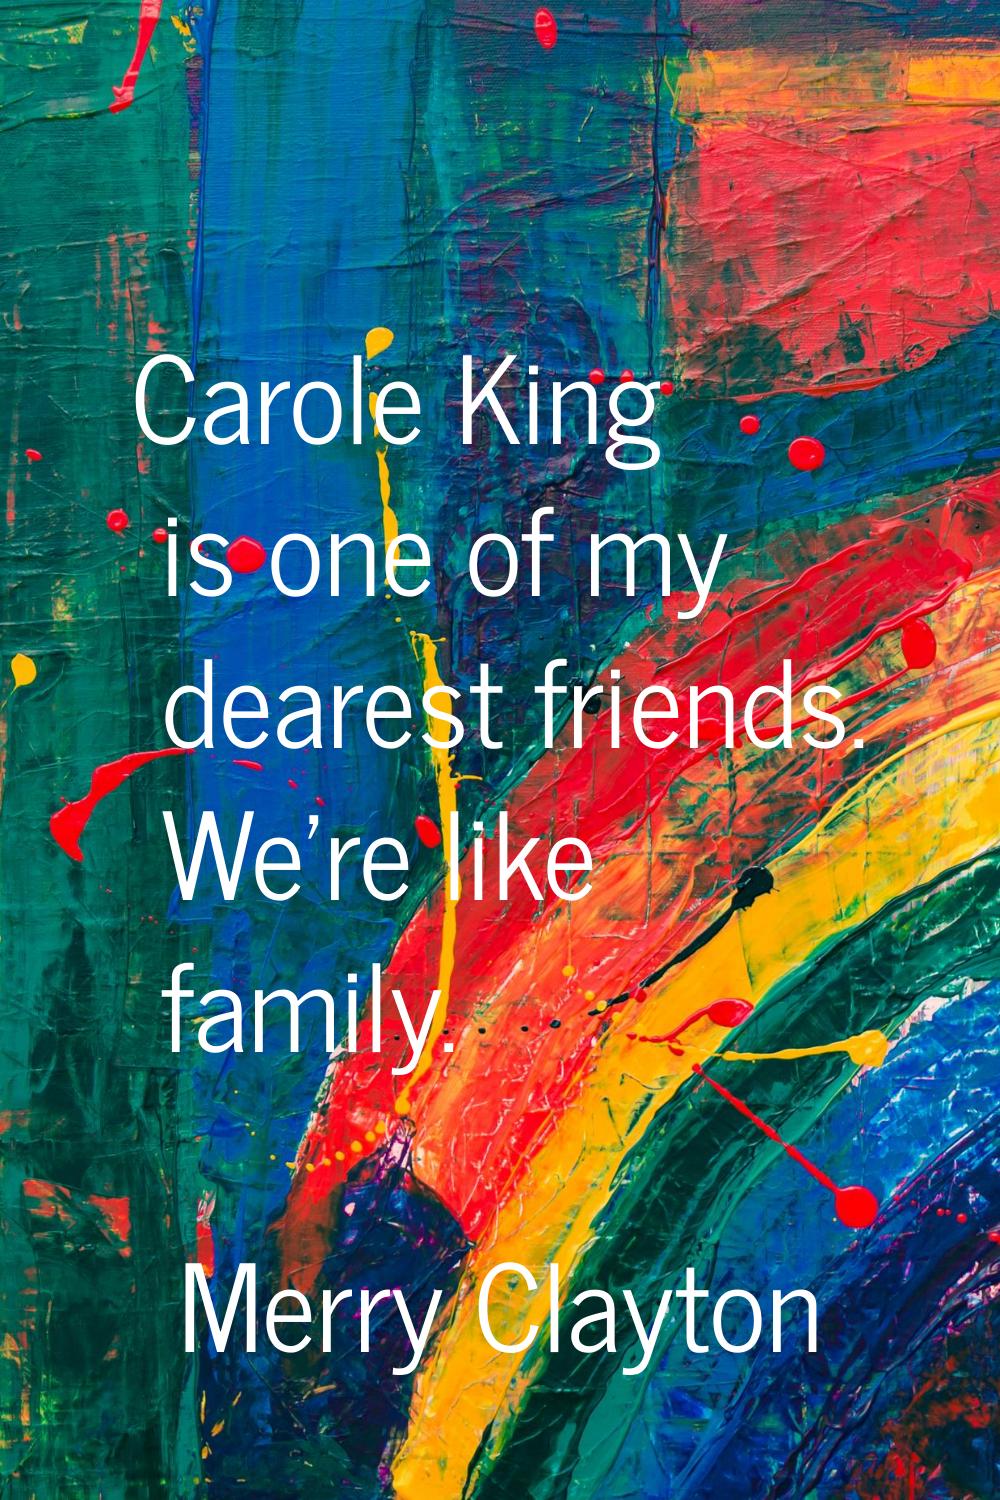 Carole King is one of my dearest friends. We're like family.